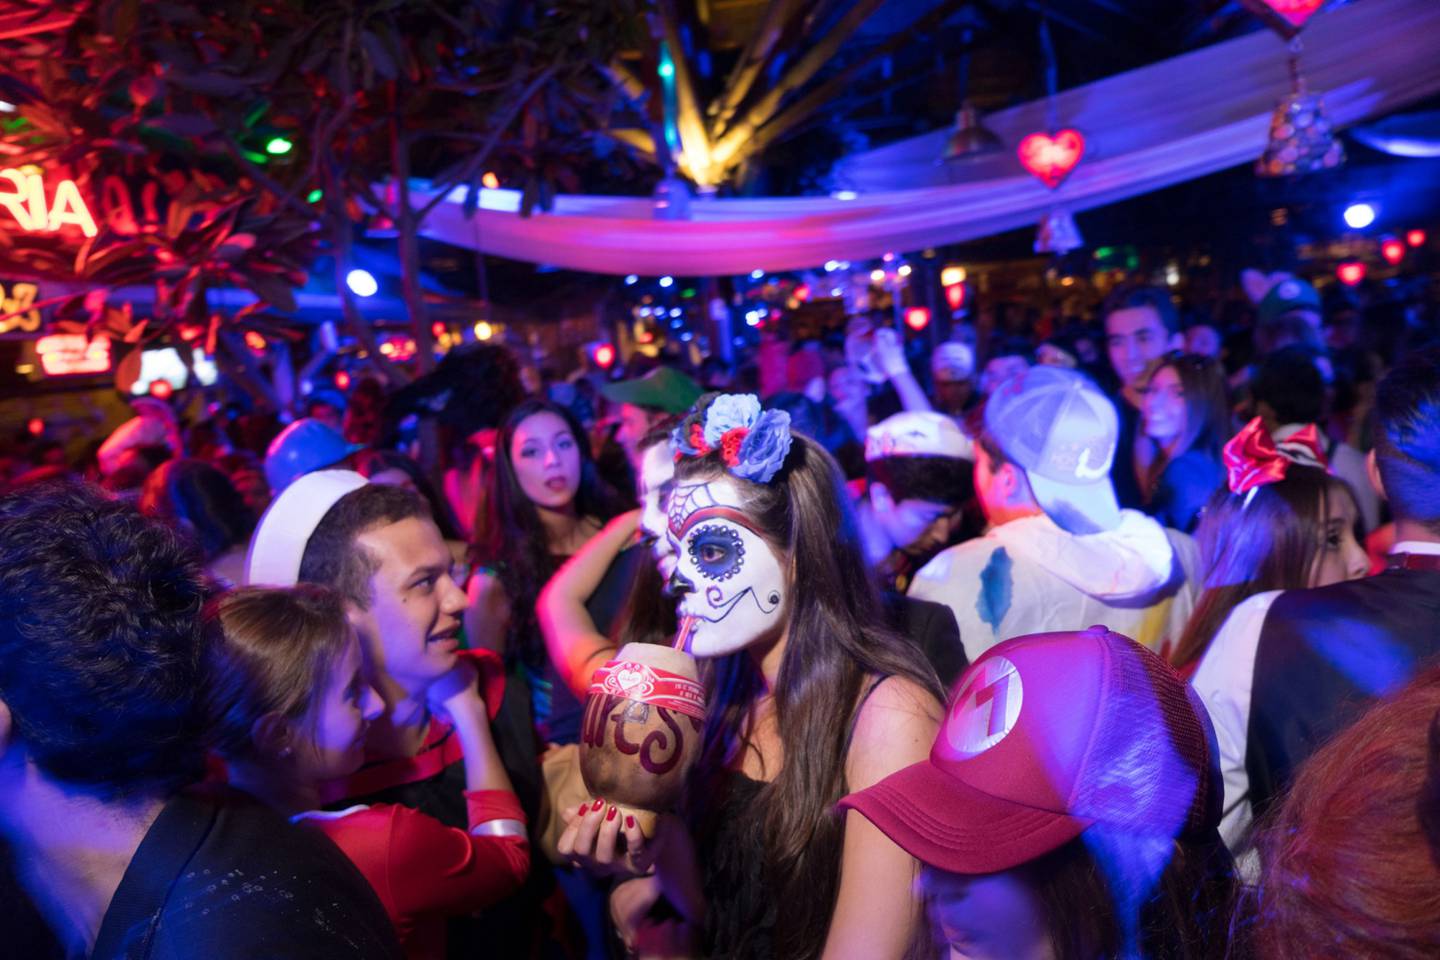 Personas disfrazadas bailan durante una fiesta de Halloween en el restaurante Andrés Carne de Res en Bogotá, Colombia.dfd